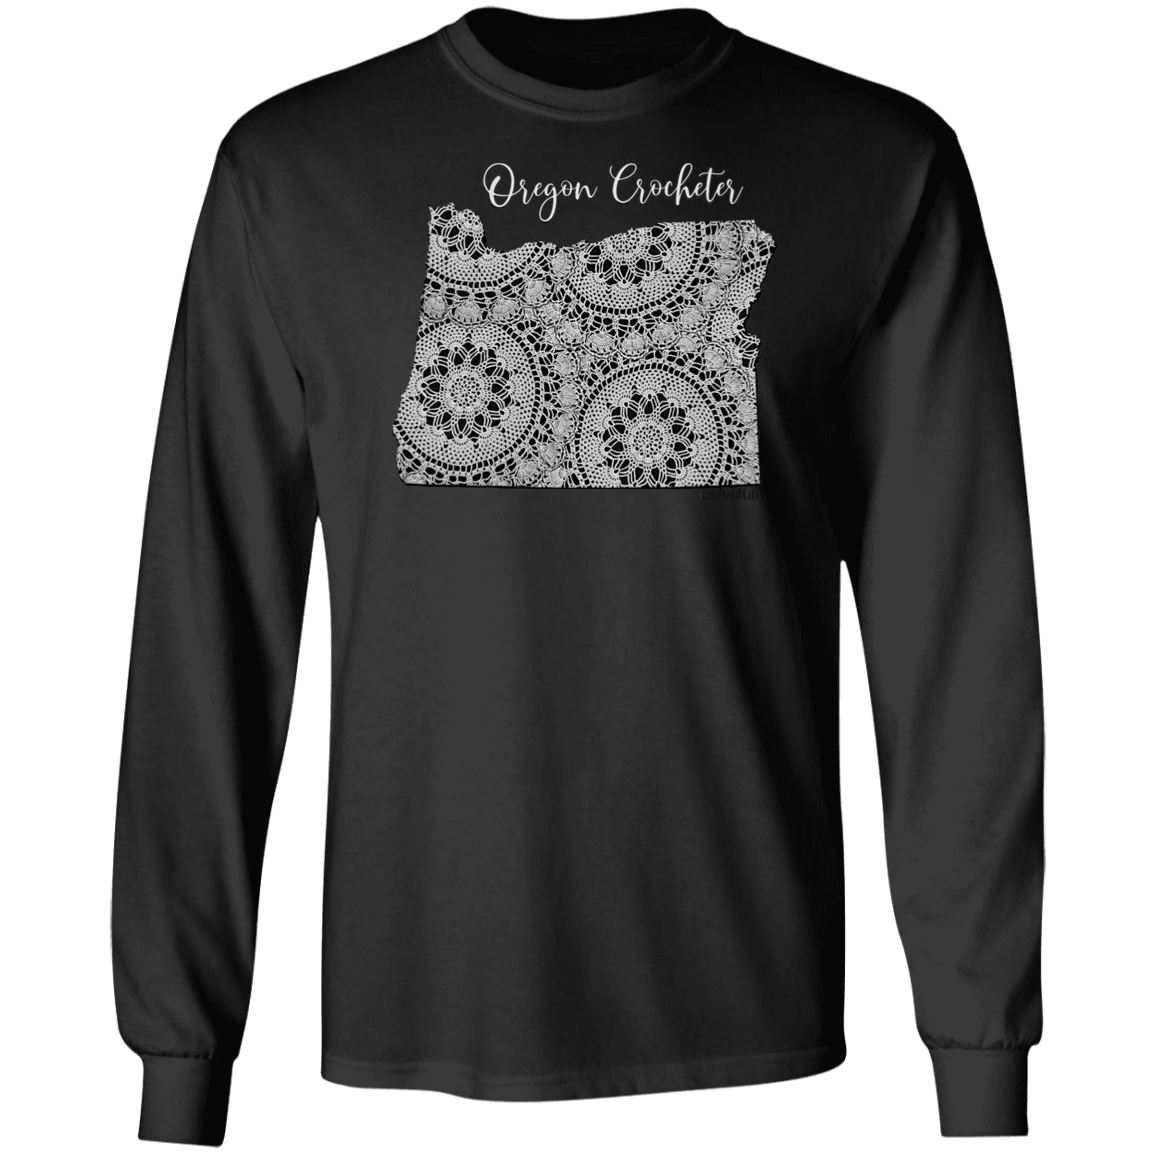 Oregon Crocheter LS Ultra Cotton T-Shirt